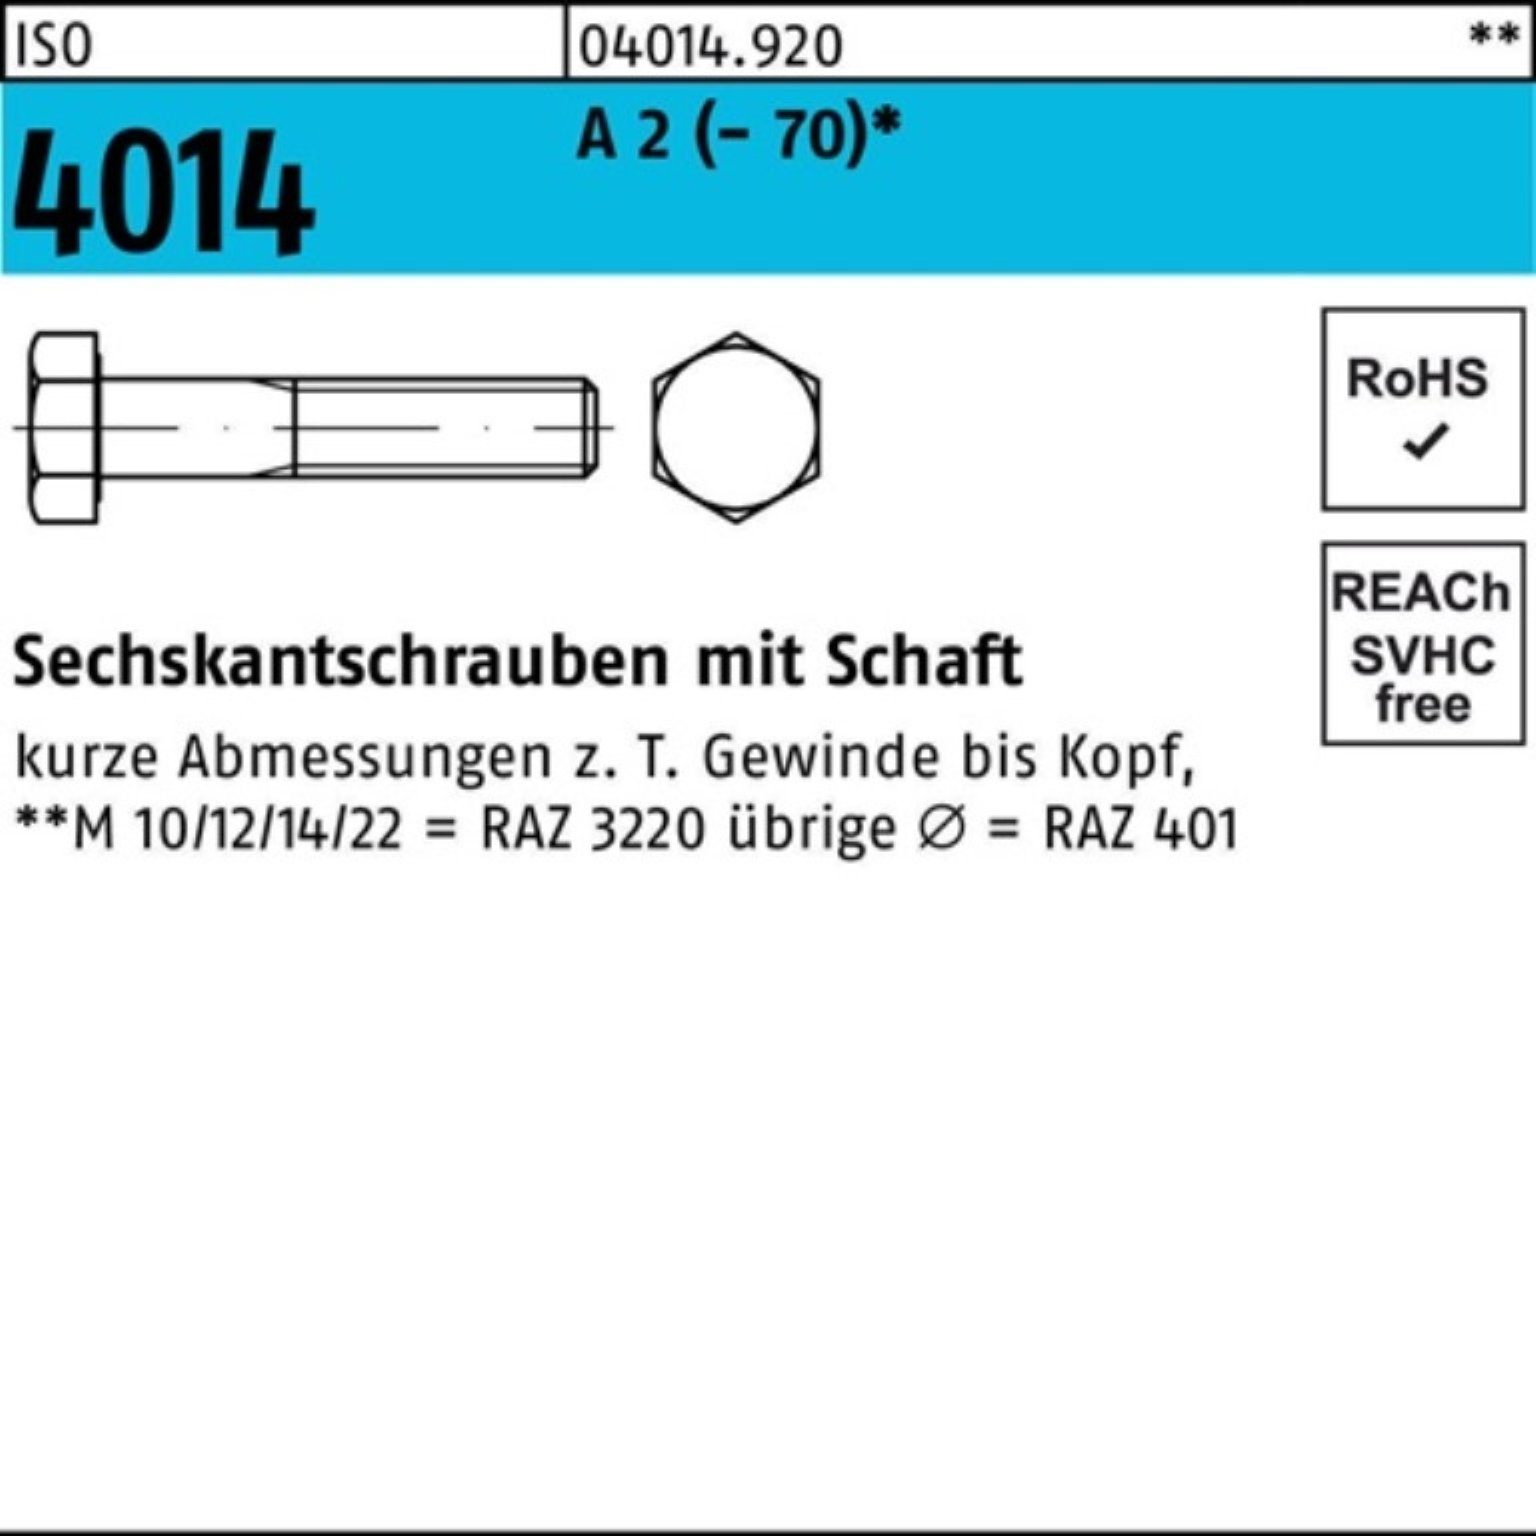 Bufab Sechskantschraube 100er Pack Sechskantschraube ISO 4014 Schaft M12x 160 A 2 (70) 1 St